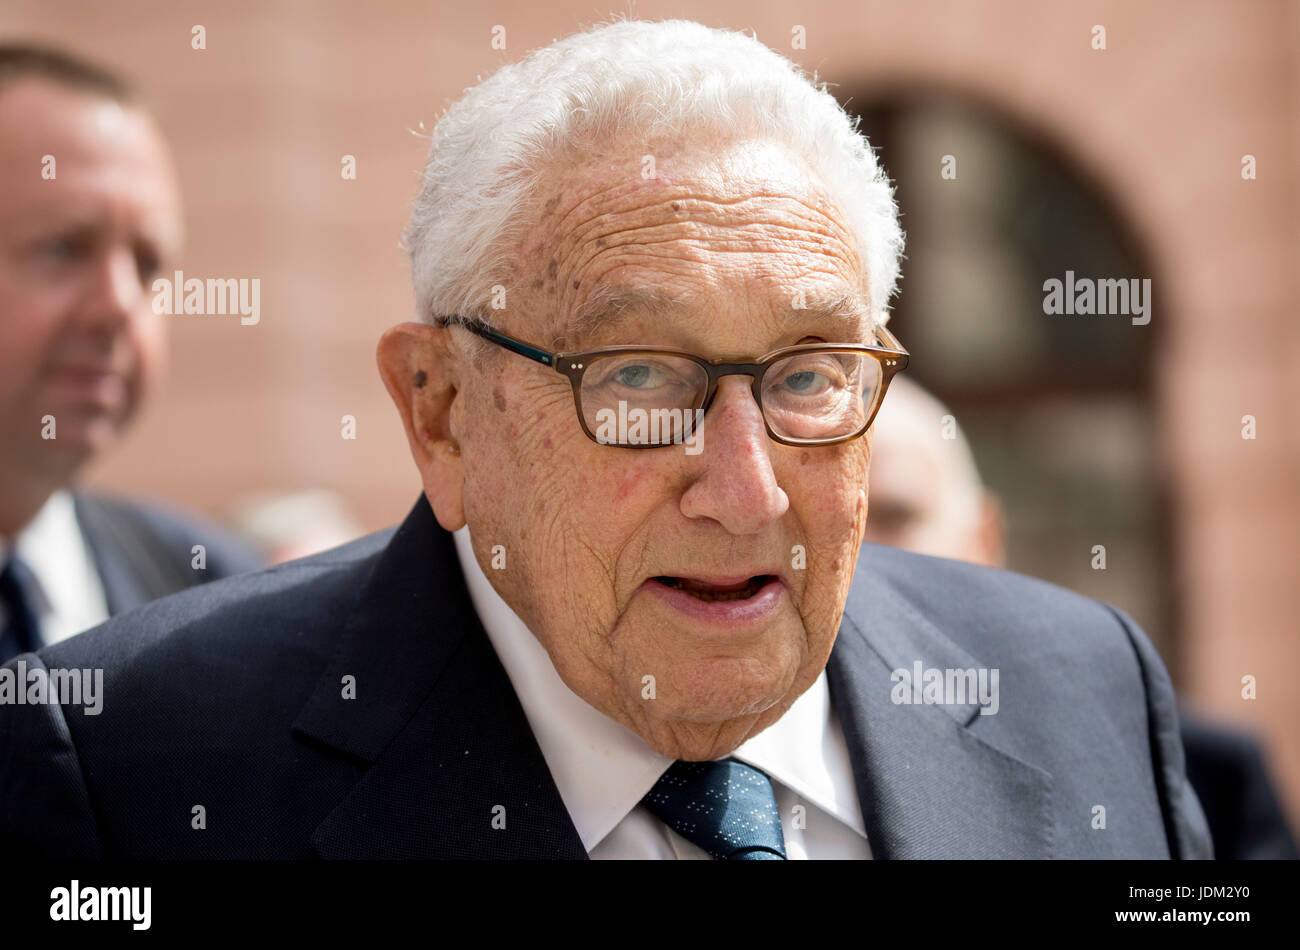 Berlin, Deutschland. 21. Juni 2017. Der ehemalige U.S. Foreign Minister Henry Kissinger besucht die Konferenz des German Marshall Fund der Vereinigten Staaten auf "70 Jahre Marshall-Plan" in Berlin, Deutschland, 21. Juni 2017. Foto: Kay Nietfeld/Dpa/Alamy Live News Stockfoto